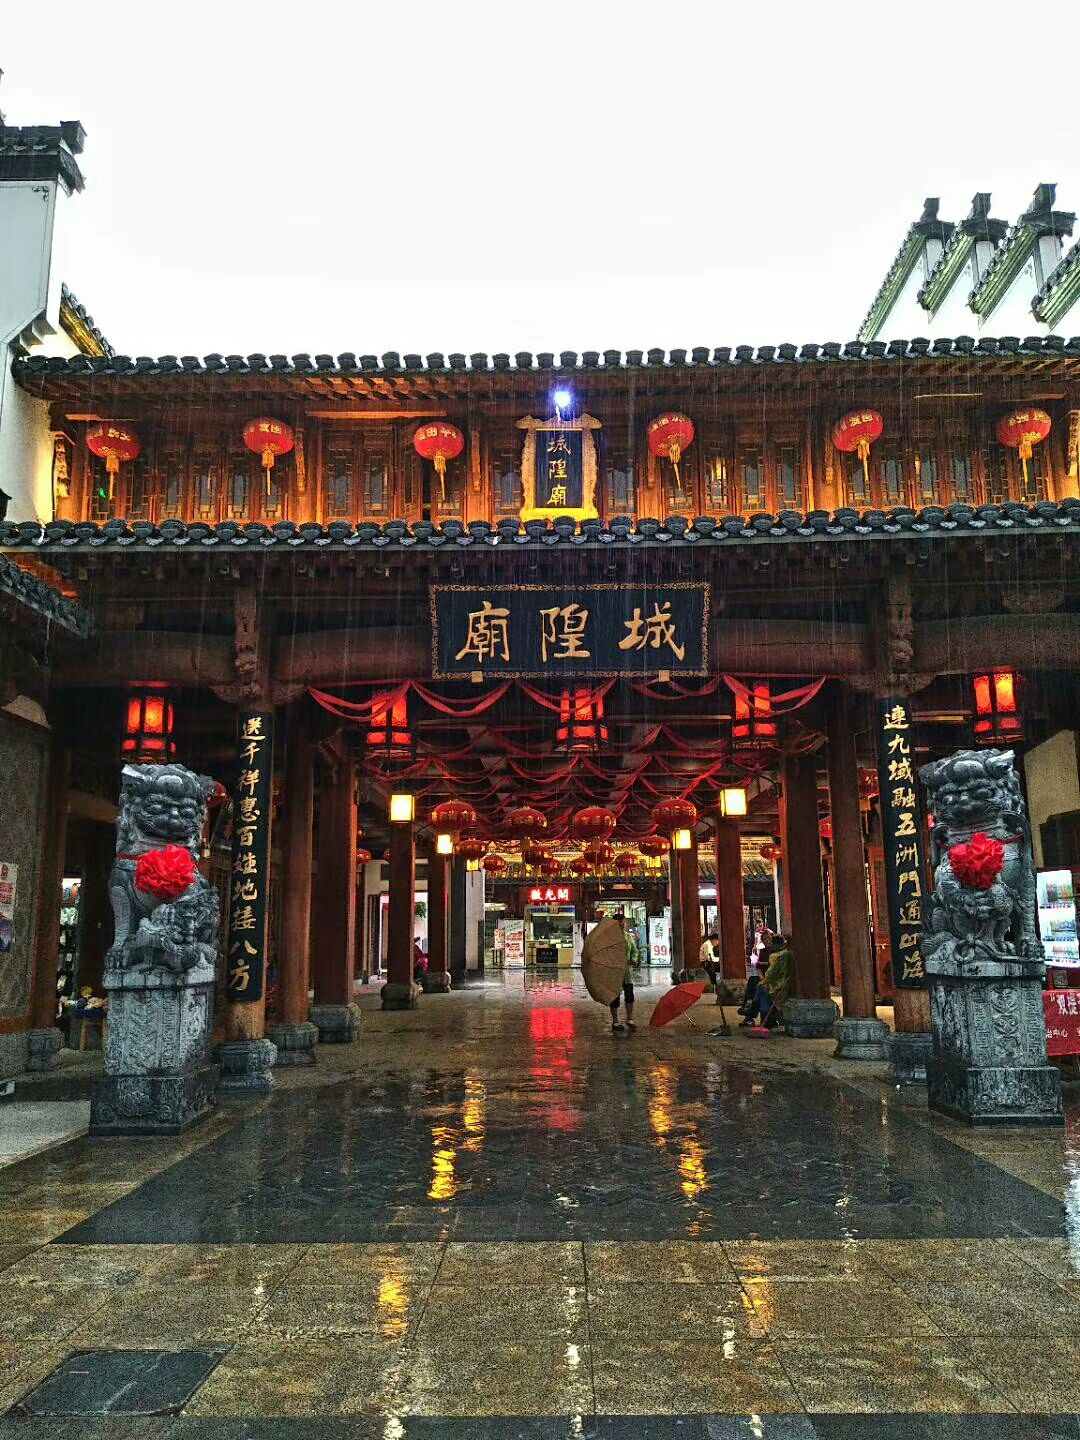 城隍庙 - 上海旅游景点详情 -上海市文旅推广网-上海市文化和旅游局 提供专业文化和旅游及会展信息资讯